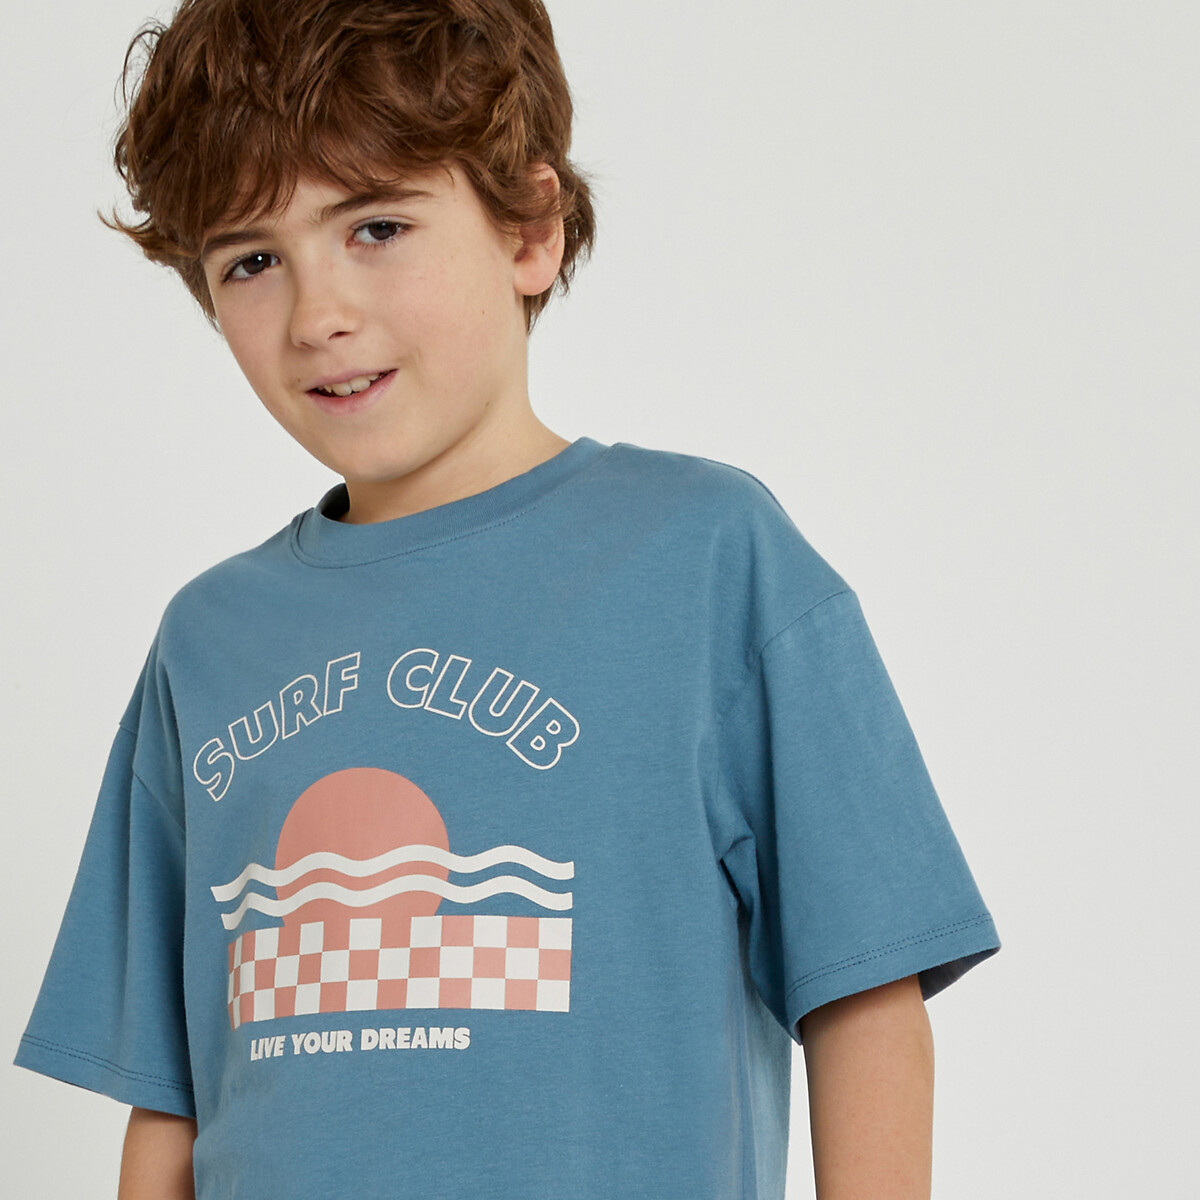 Μόδα > Παιδικά > Αγόρι > T-shirt, πόλο > Κοντά μανίκια Κοντομάνικο T-shirt oversize με μήνυμα